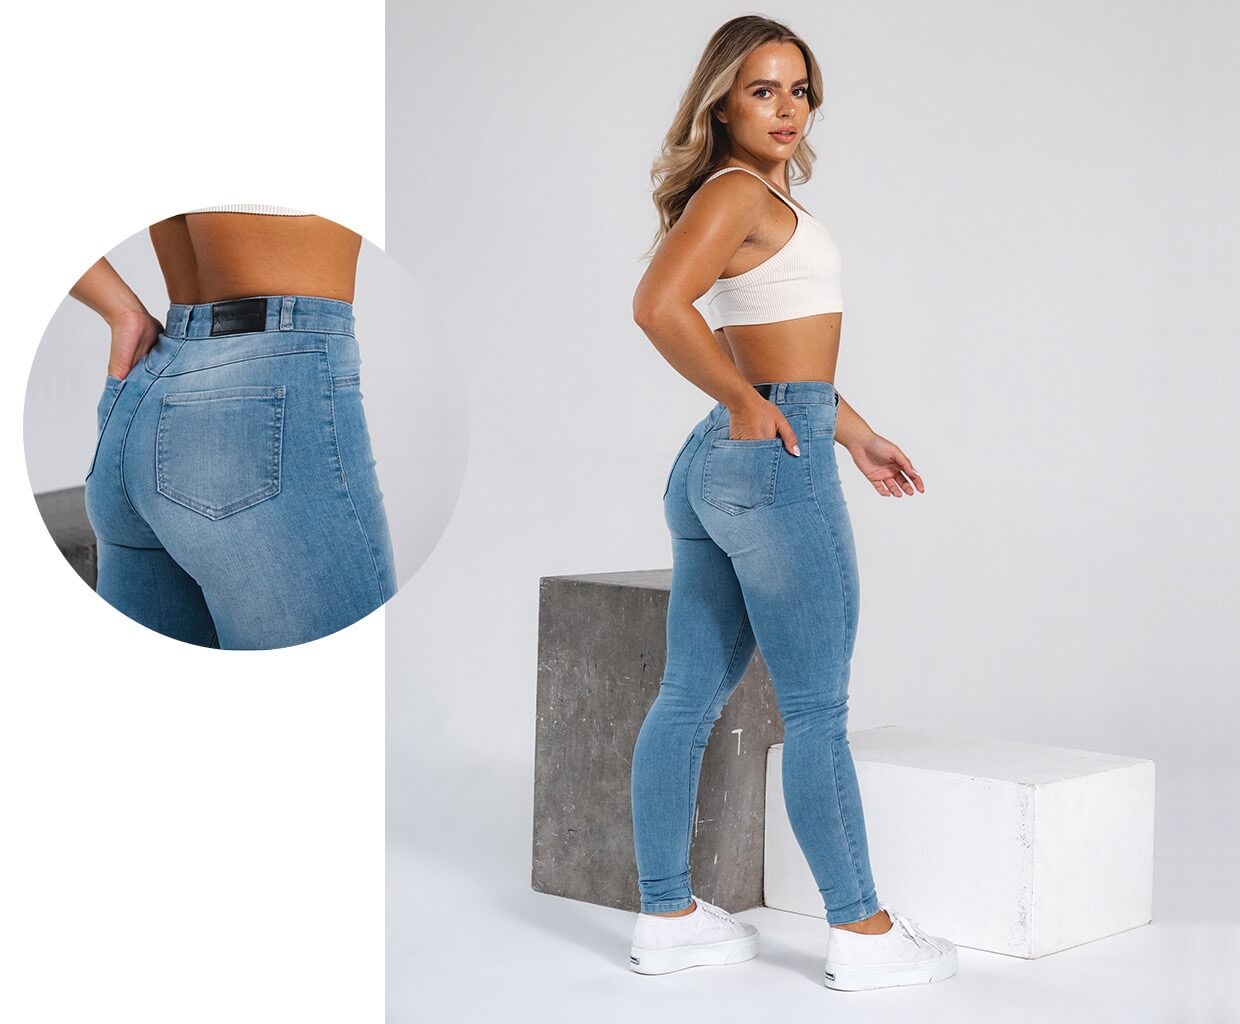 https://tailoredathlete.co.uk/cdn/shop/files/womens-jeans_1920x.jpg?v=1686057516